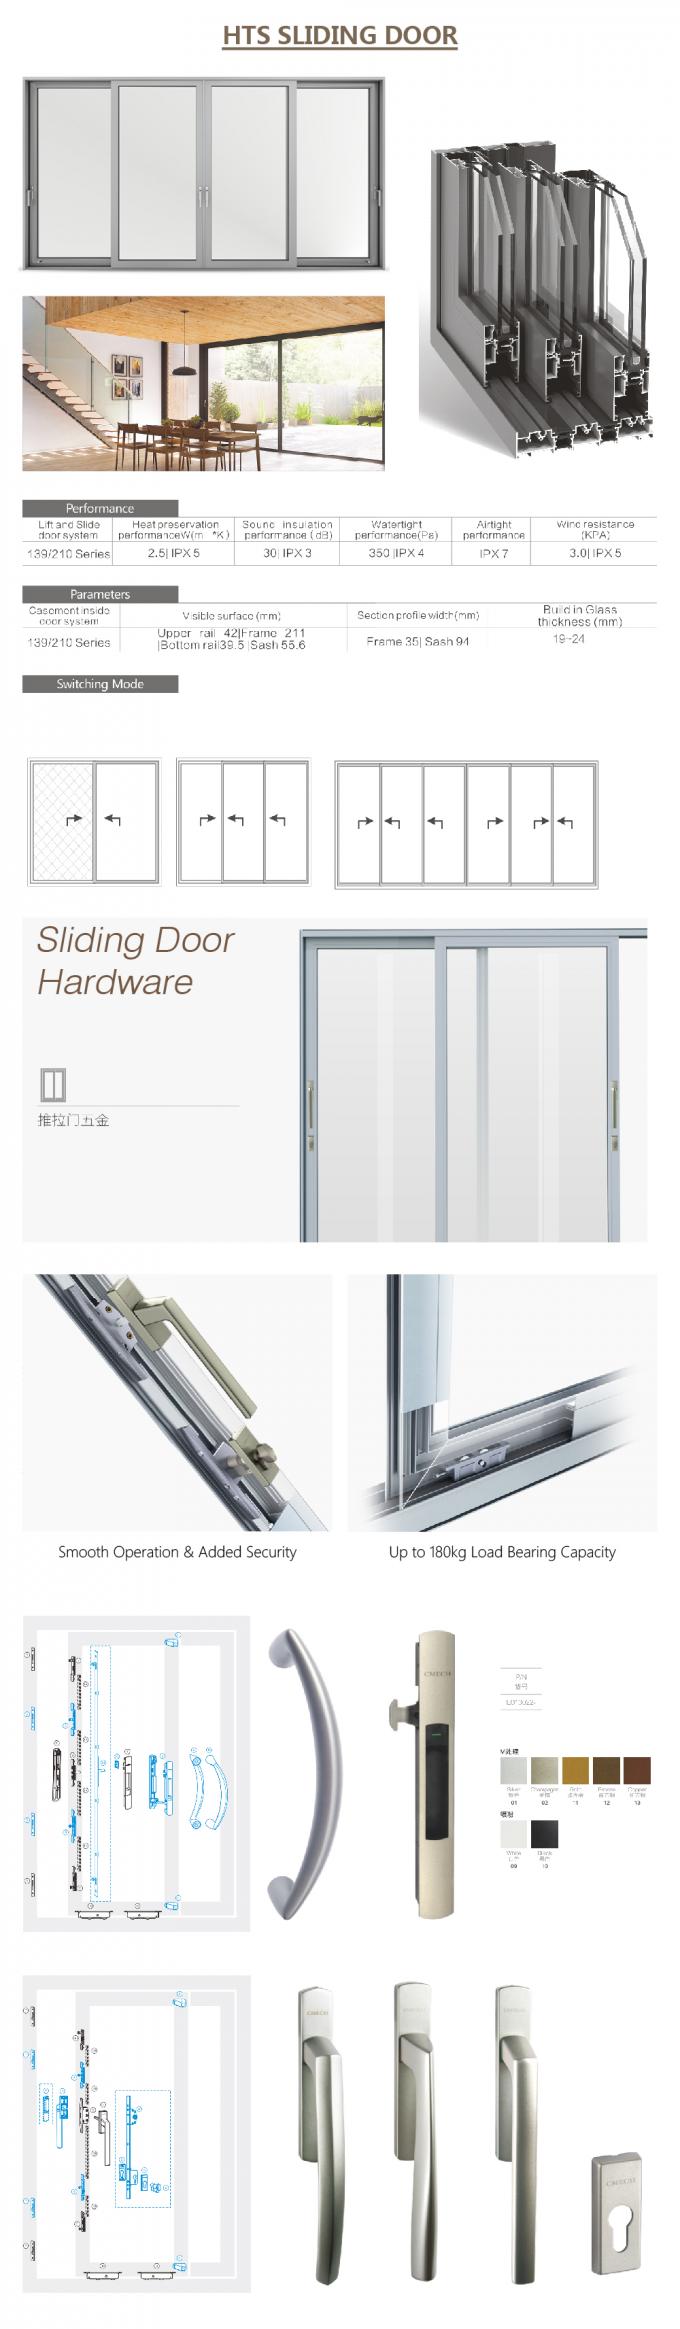 китайская раздвижная дверь, алюминиевый профиль для сползая стеклянной двери, автоматической двери сползая, стеклянных алюминиевых сползая деталей раздвижной двери doorAluminium